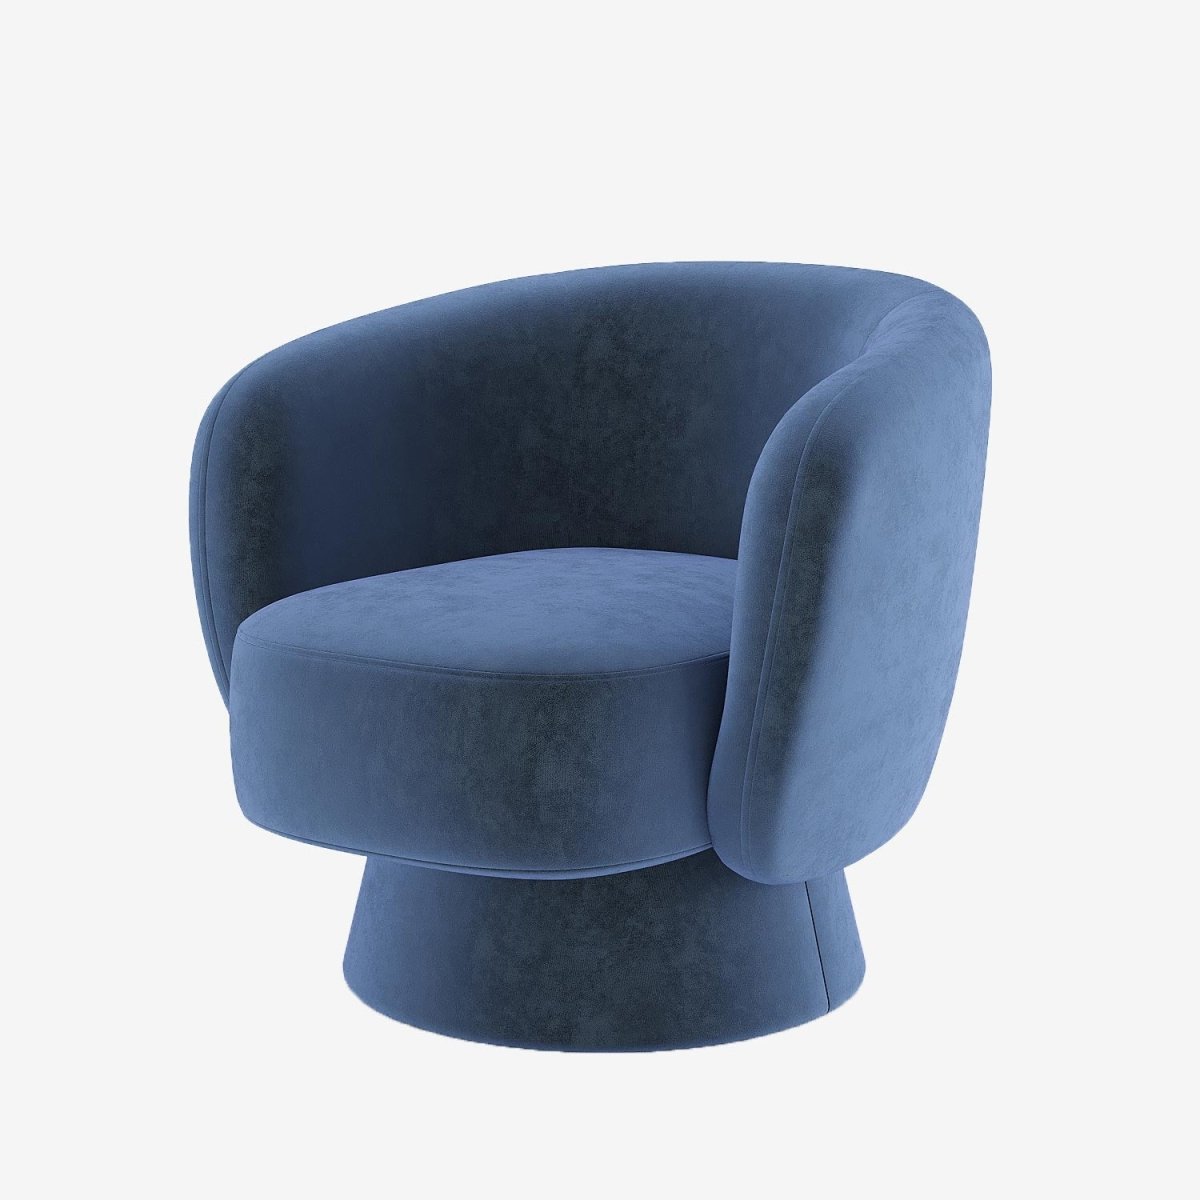 Fauteuil pivotant en velours bleu marine - Potiron Paris, le meuble déco salon design et pas cher